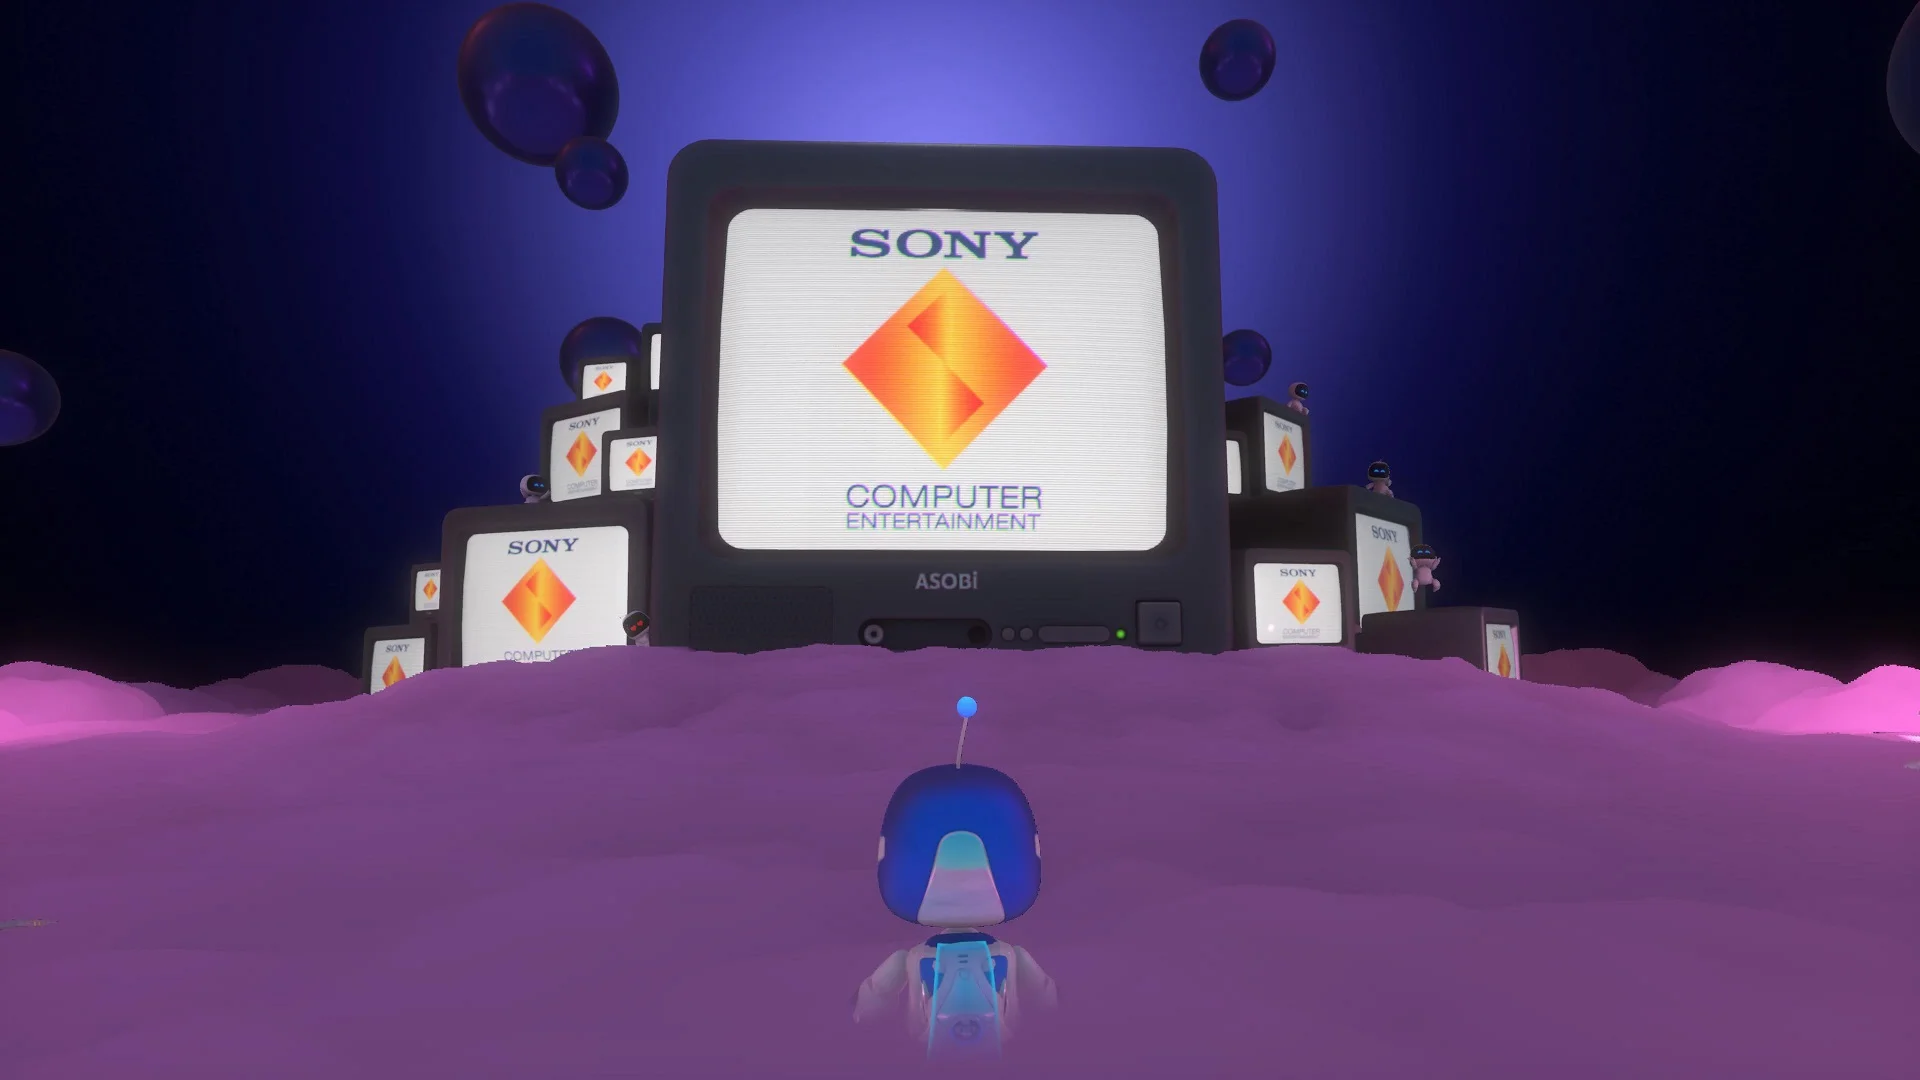 Галерея. 40 скриншотов из главных некстген-игр для PlayStation 5 - фото 2